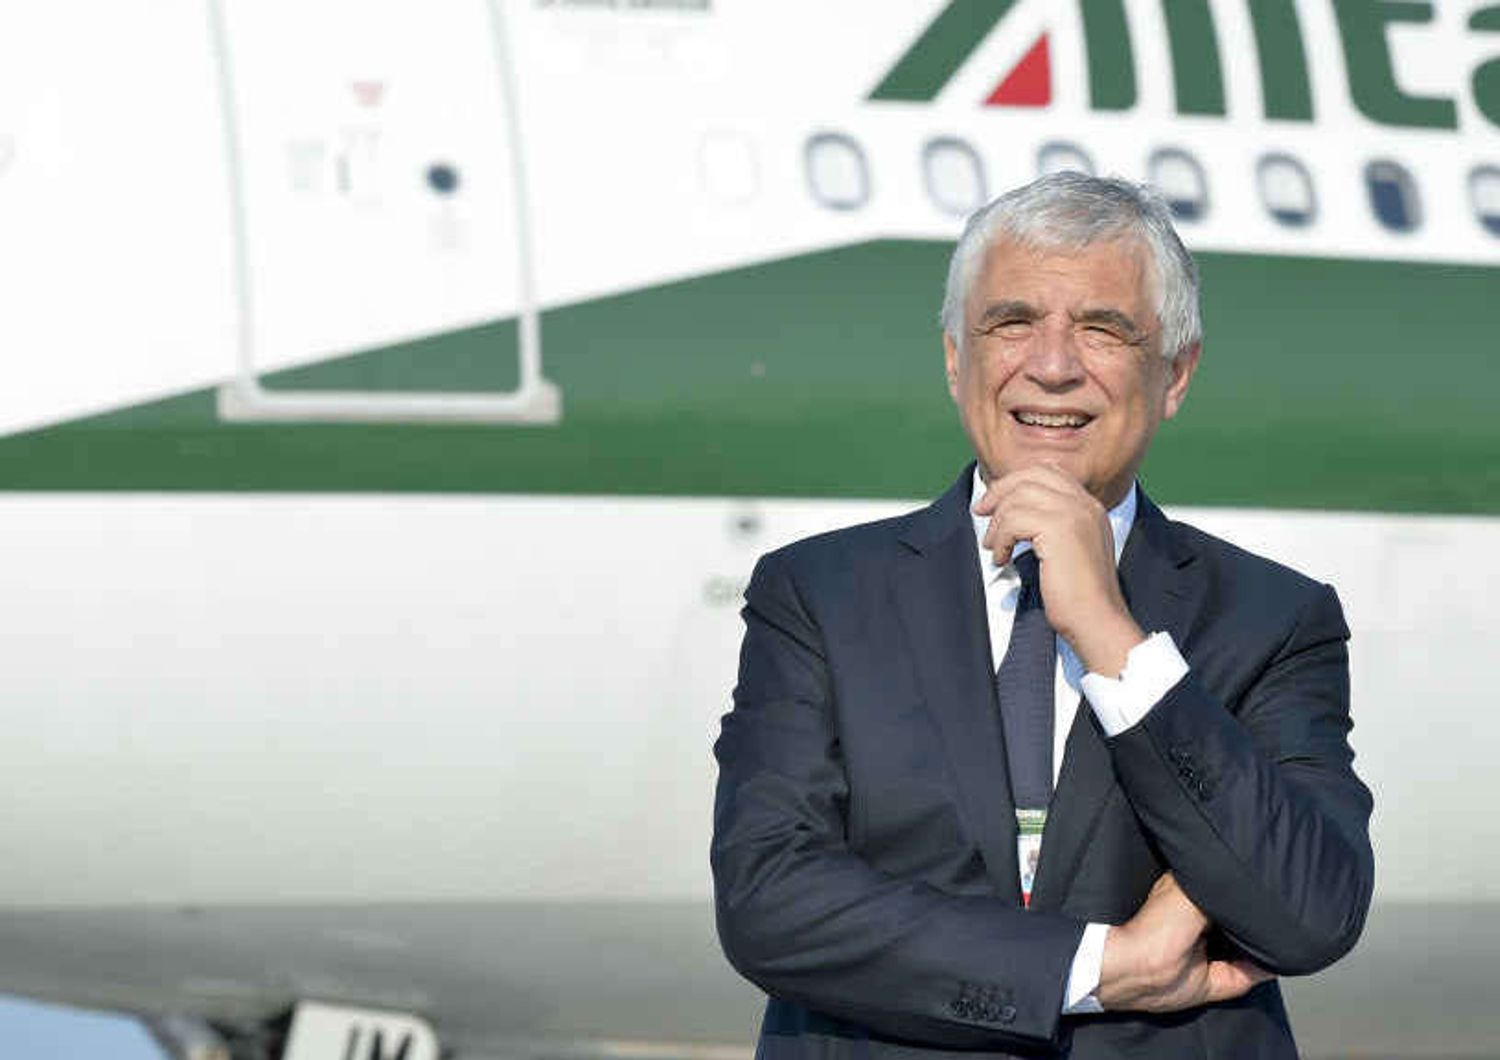 Alitalia: Del Torchio avverte "Intesa sui tagli o salta tutto"